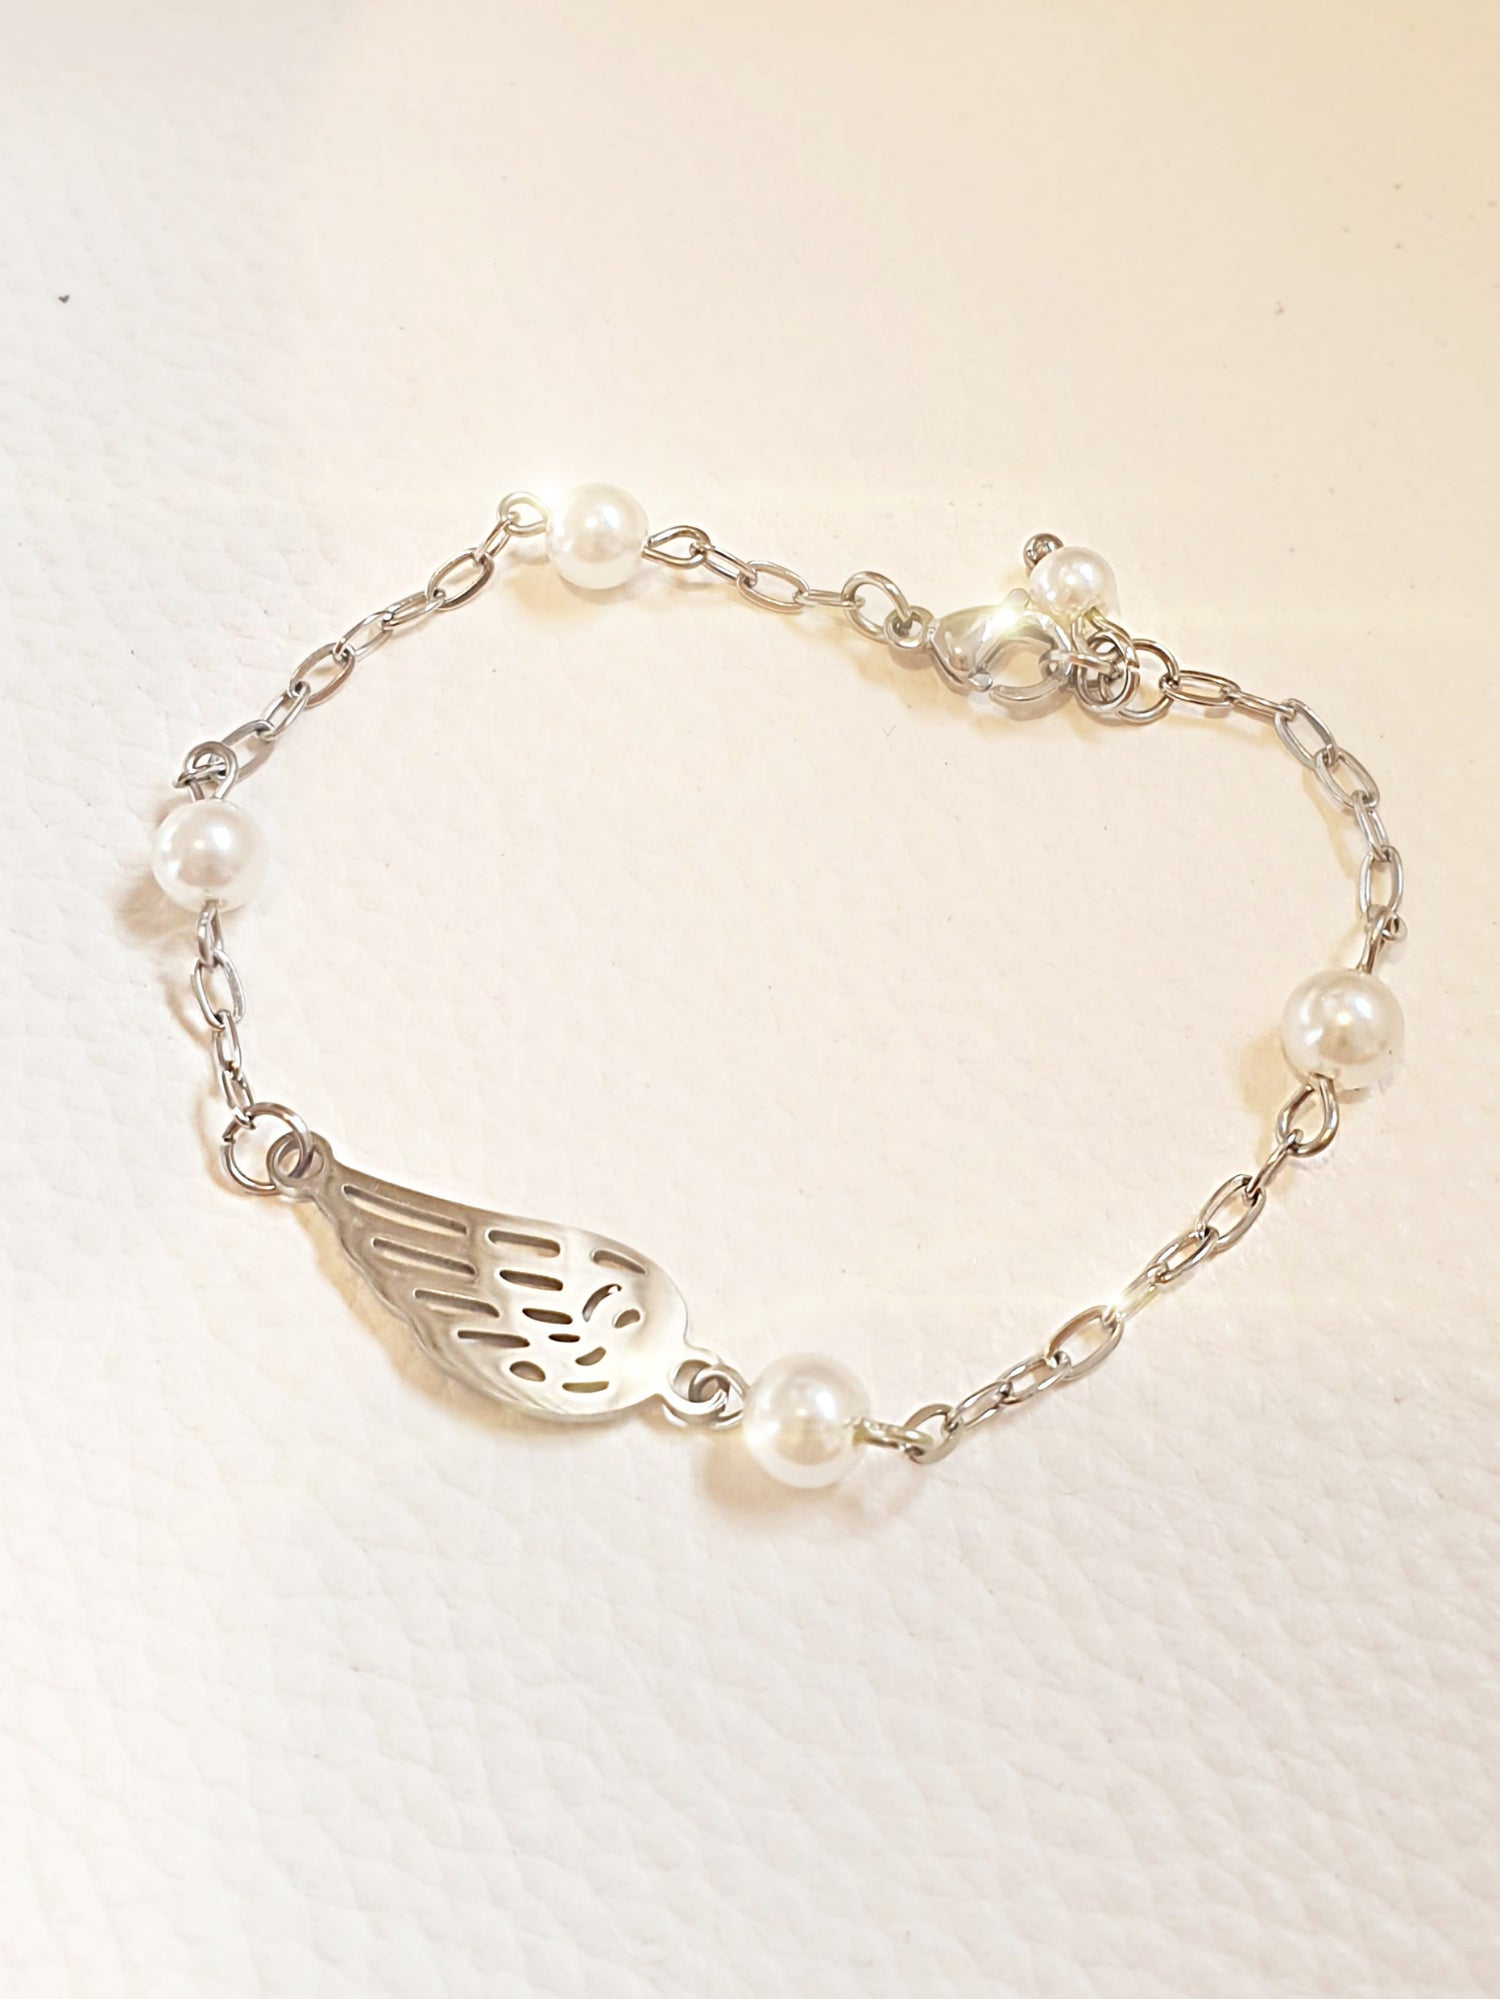 Zartes Armband aus Edelstahl mit Engelsflügel und kleinen Perlen